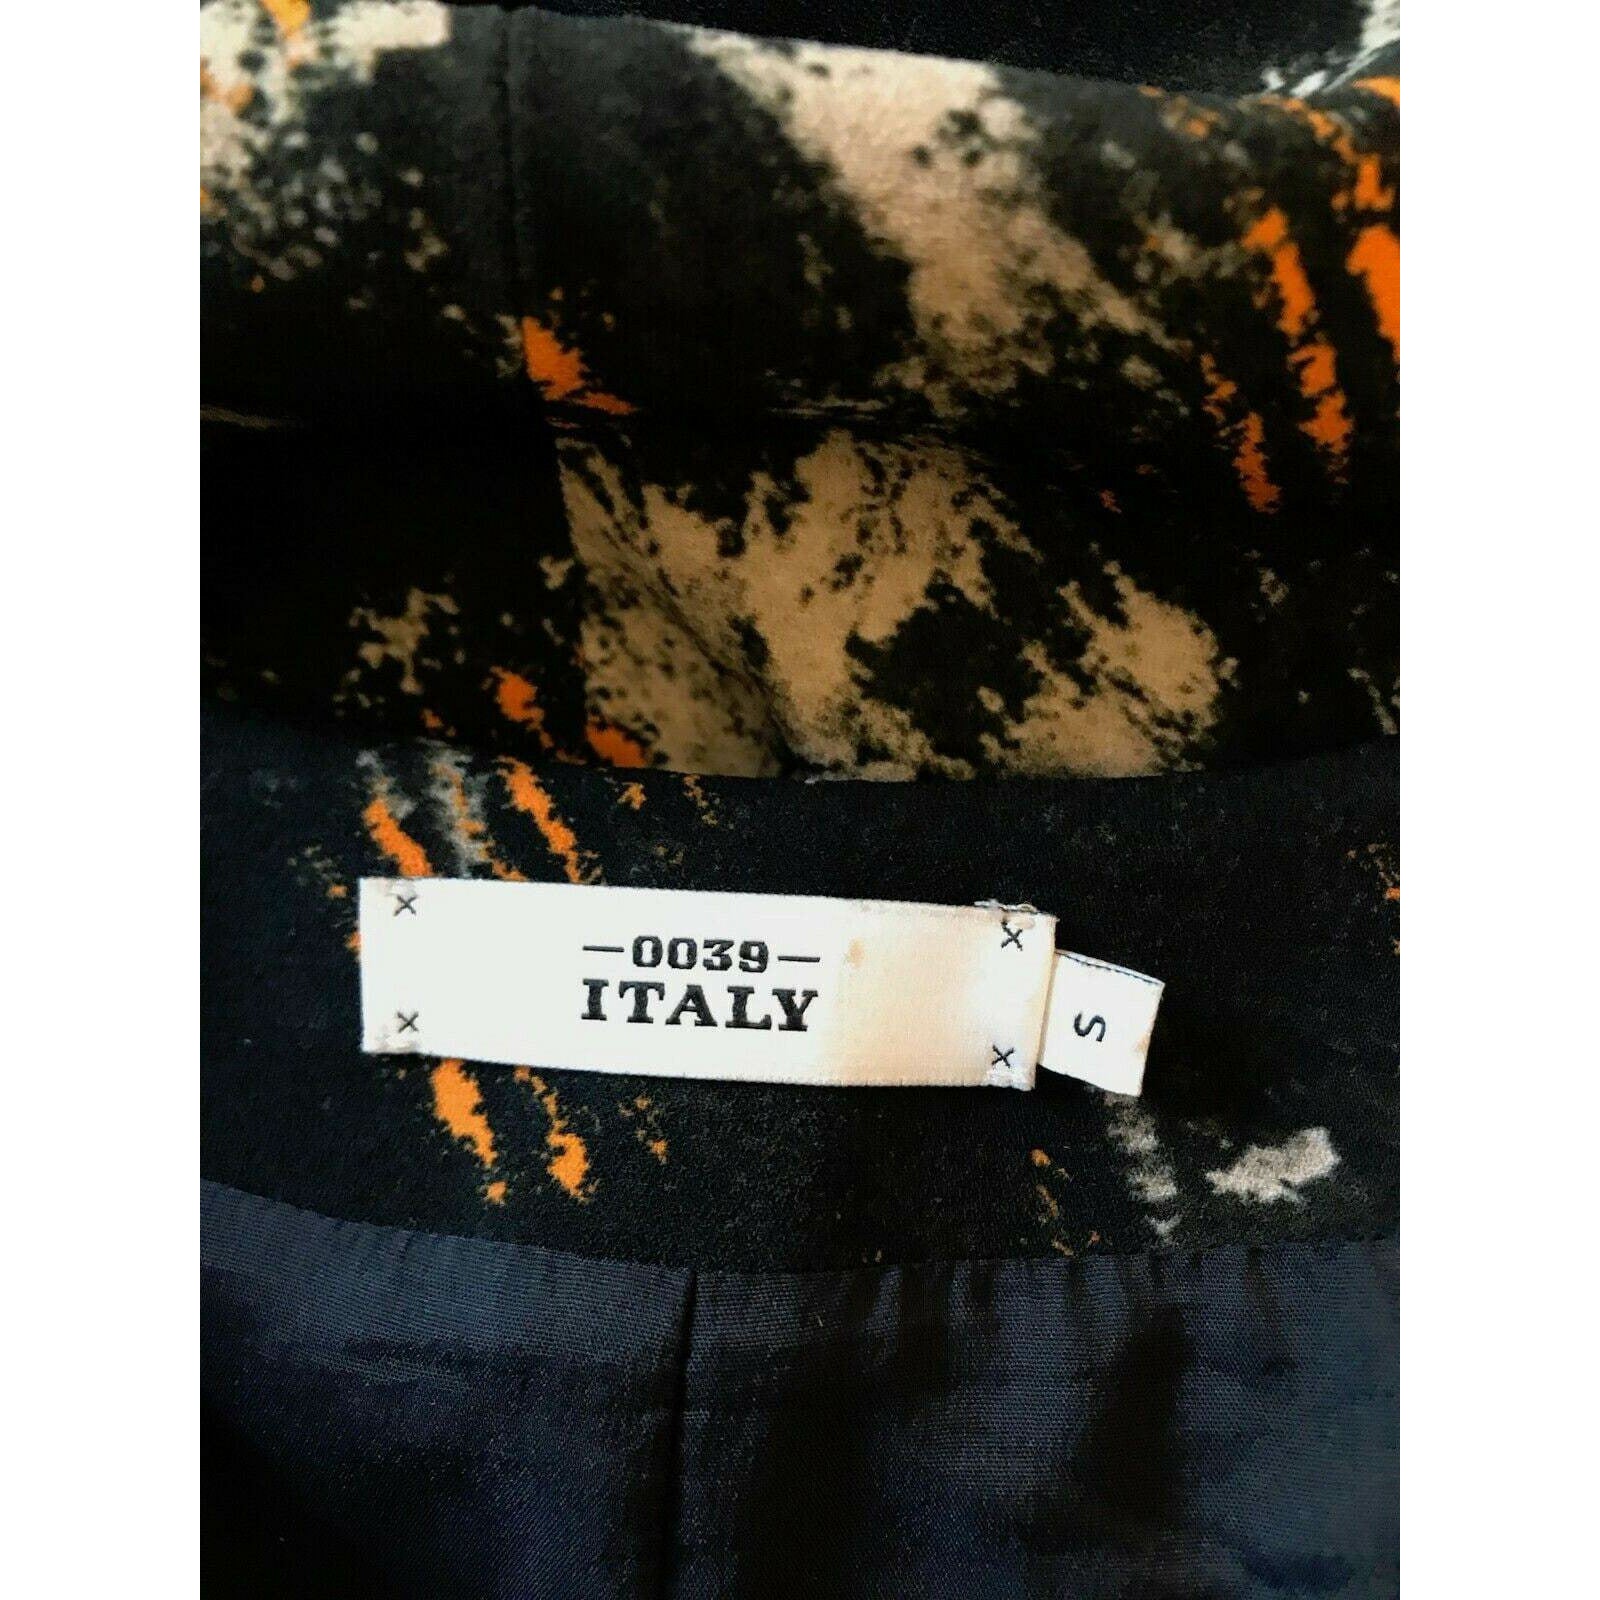 Italy Black, Beige & Orange Medina Tunic Dress Size S UK 8/10 US 4/6 EU 36/38 Timeless Fashions